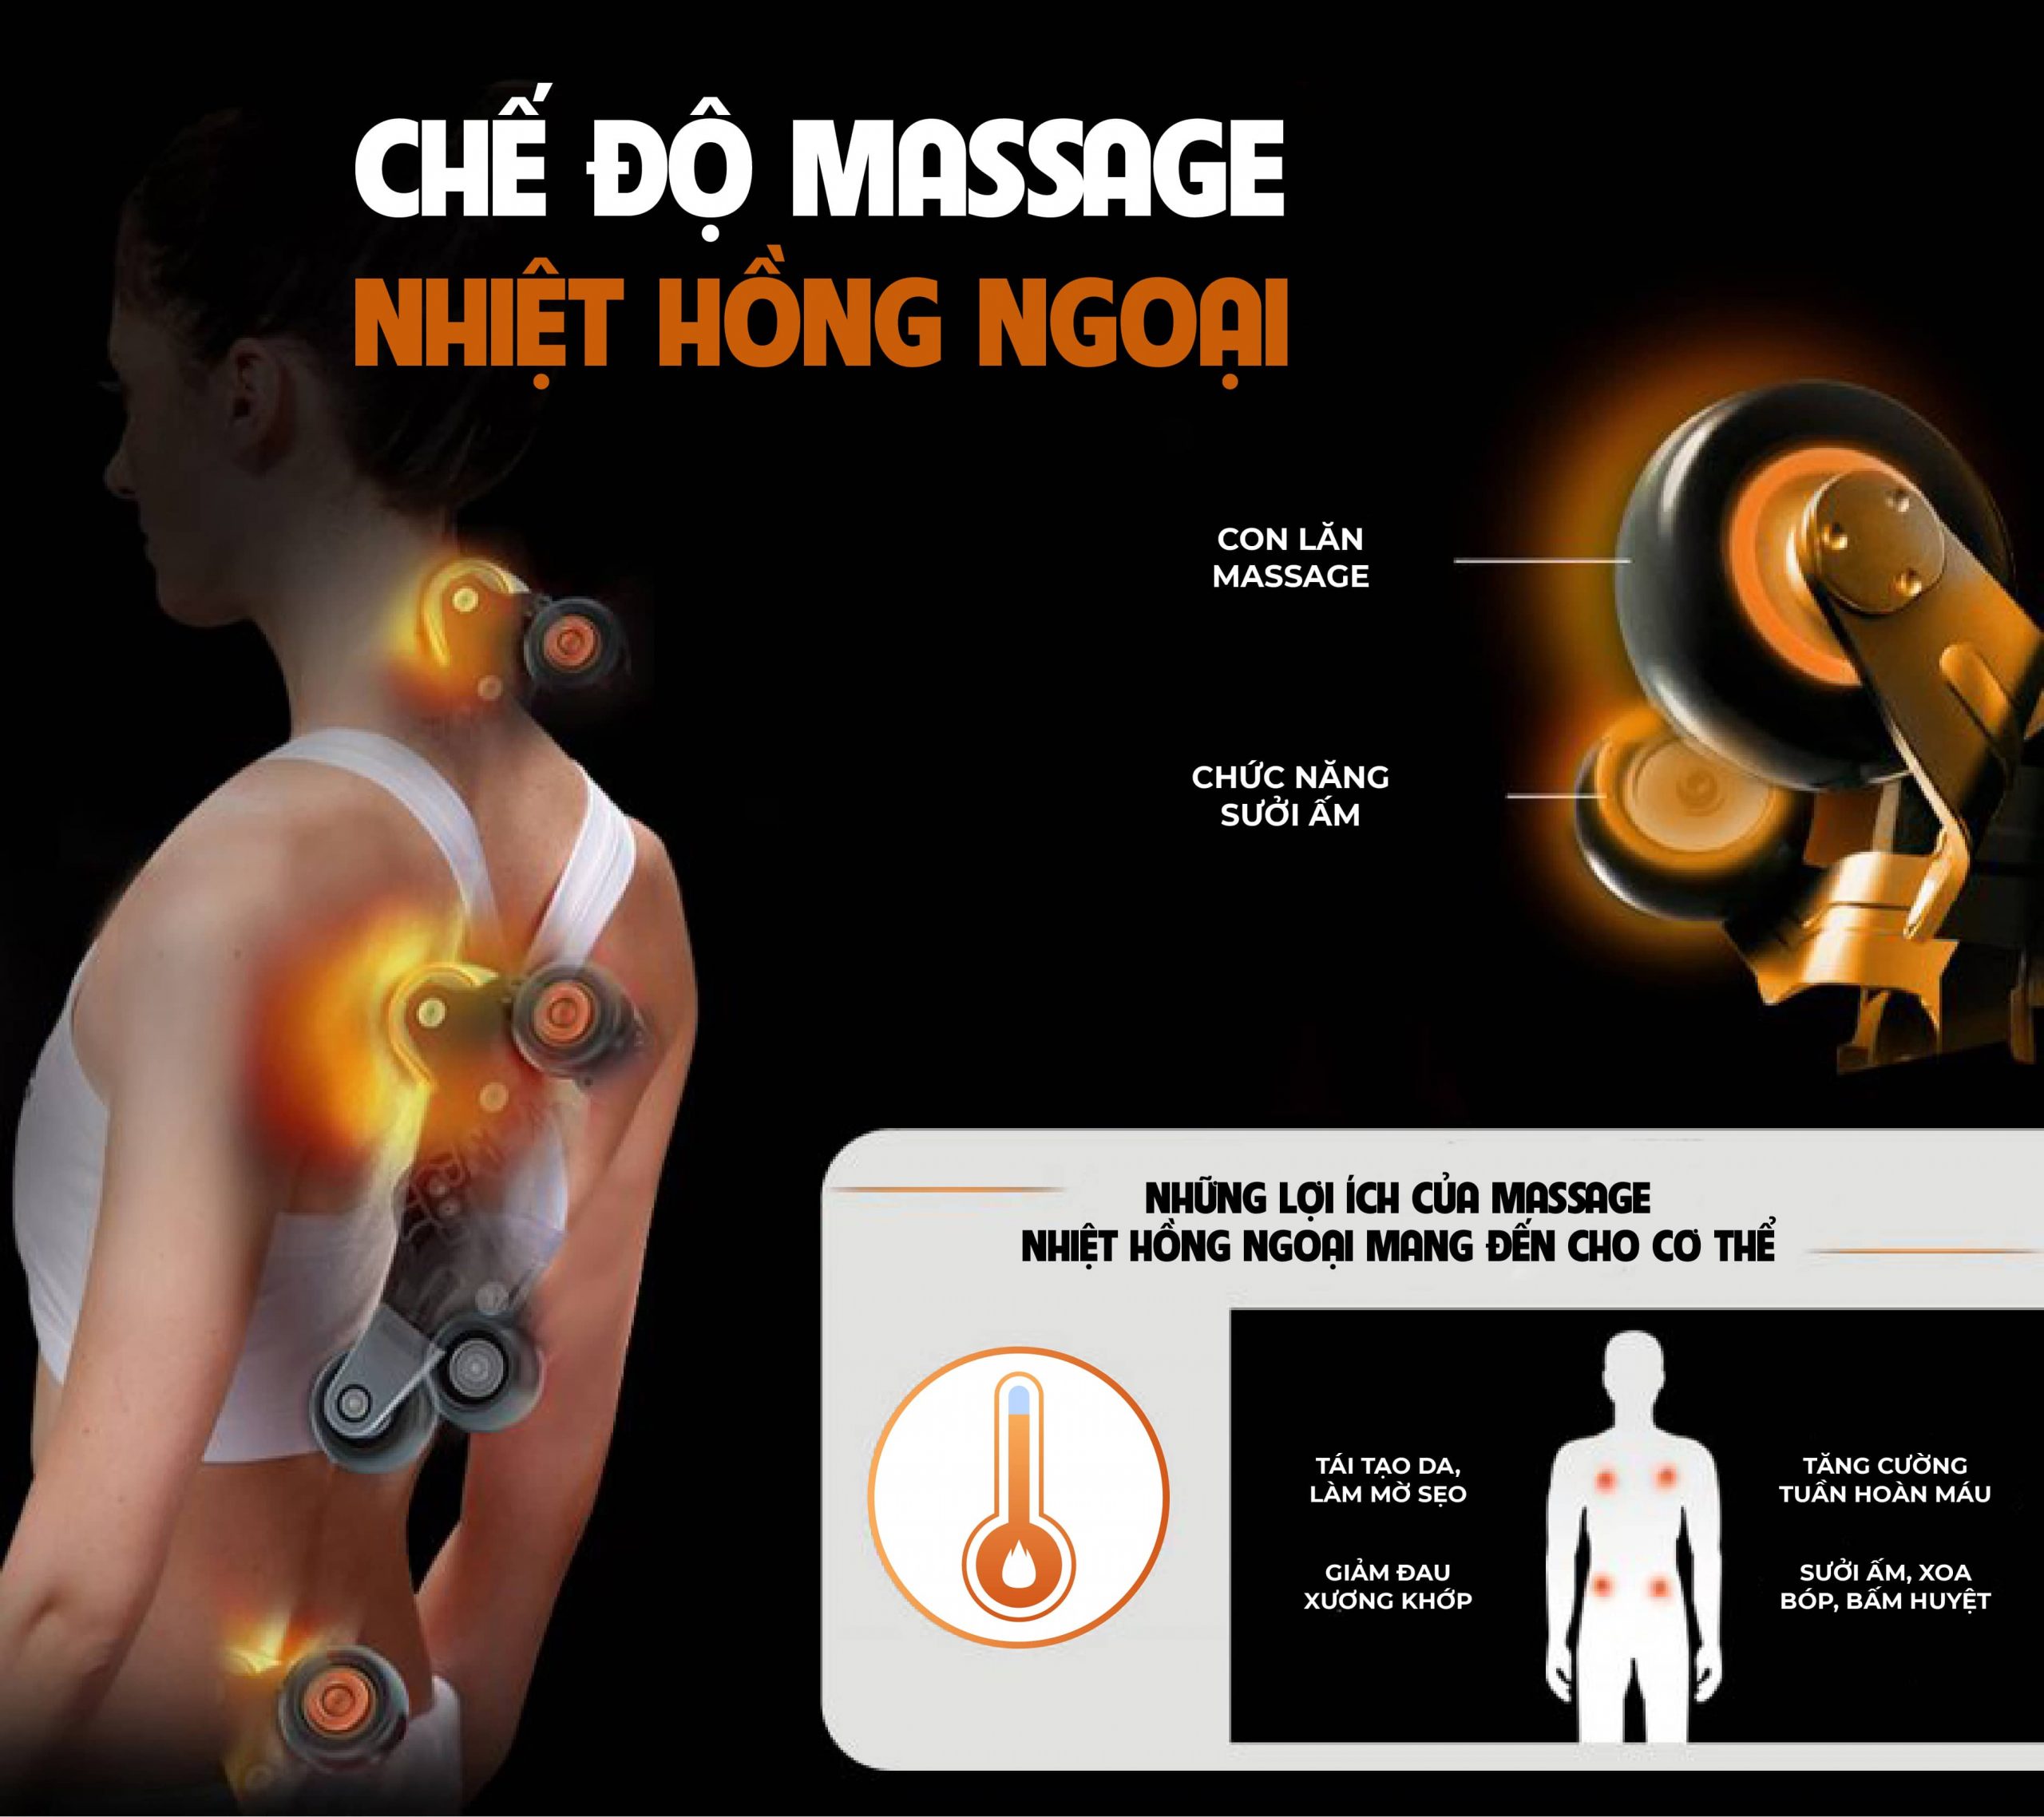 Chế độ massage 6D nhiệt hồng ngoại giúp giảm nhanh các cơn đau nhức ê buốt kéo dài trả lại trạng thái cơ thể khỏe mạnh